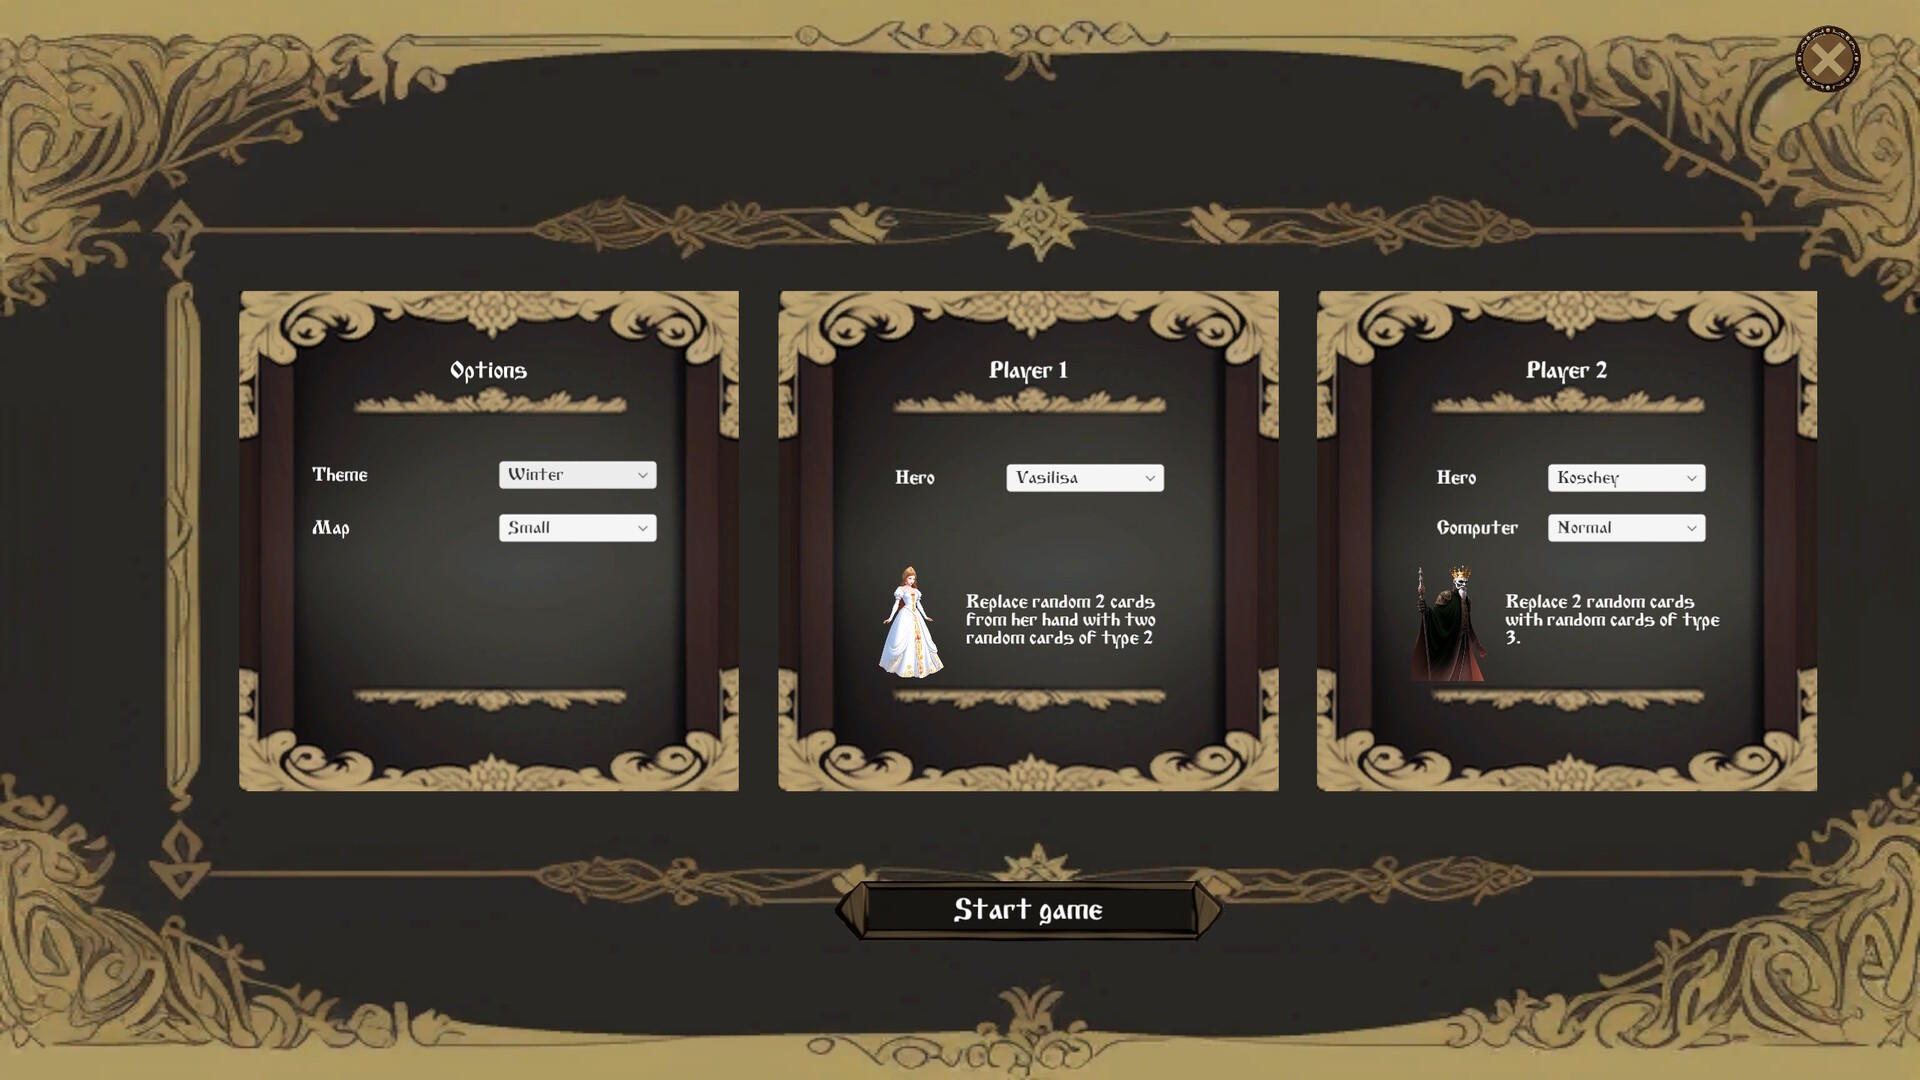 Divnozemye screenshot game